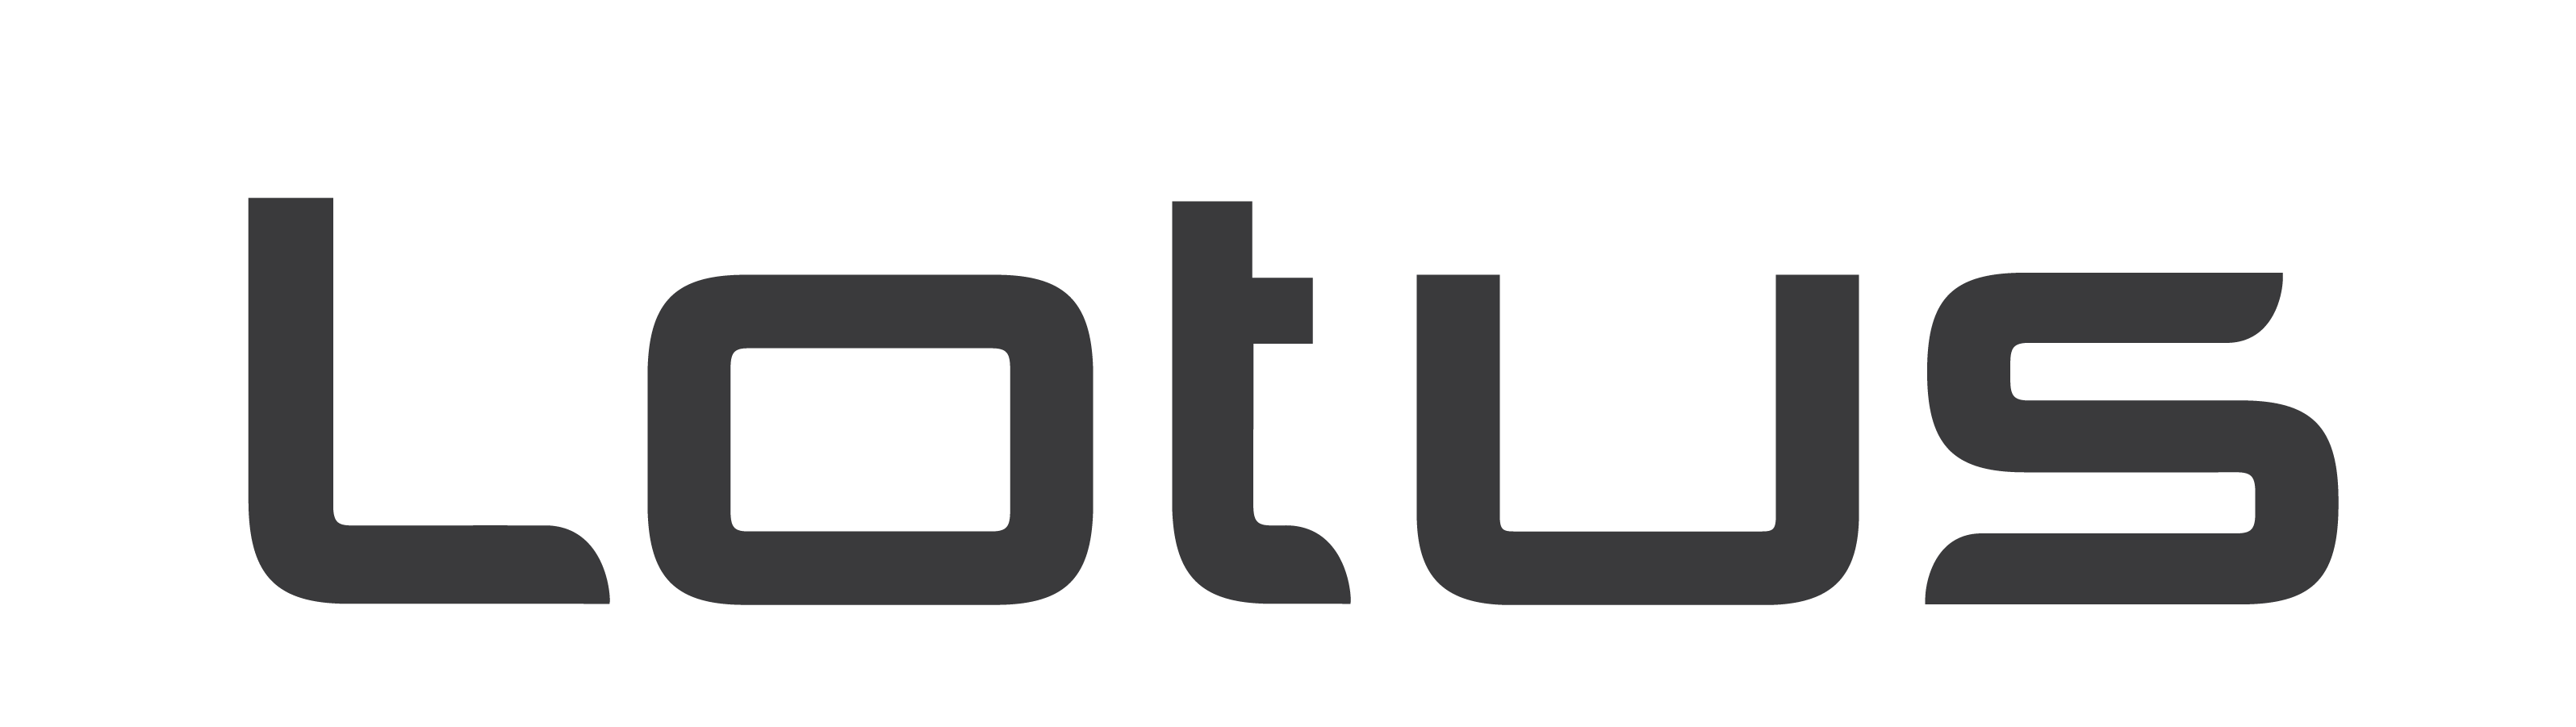 Lotus_logo-grey.png